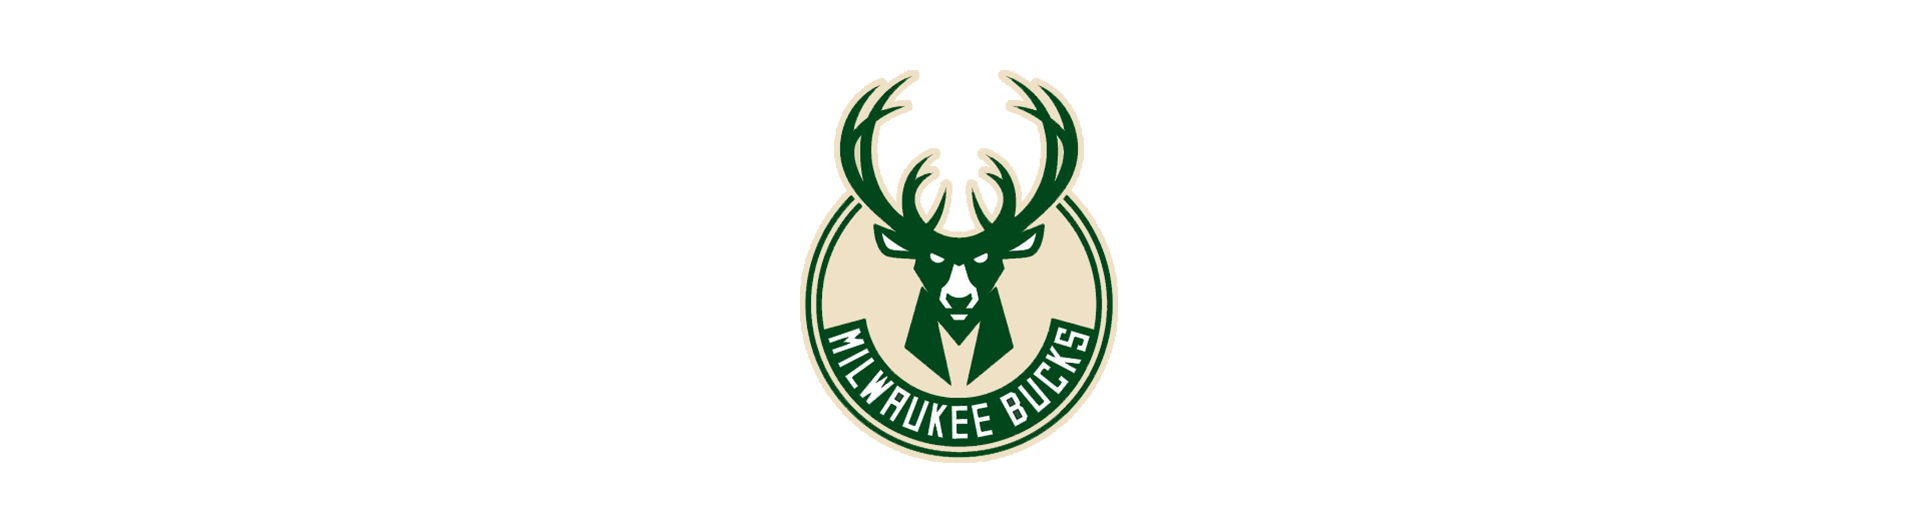 Milwaukee Bucks (MIL)